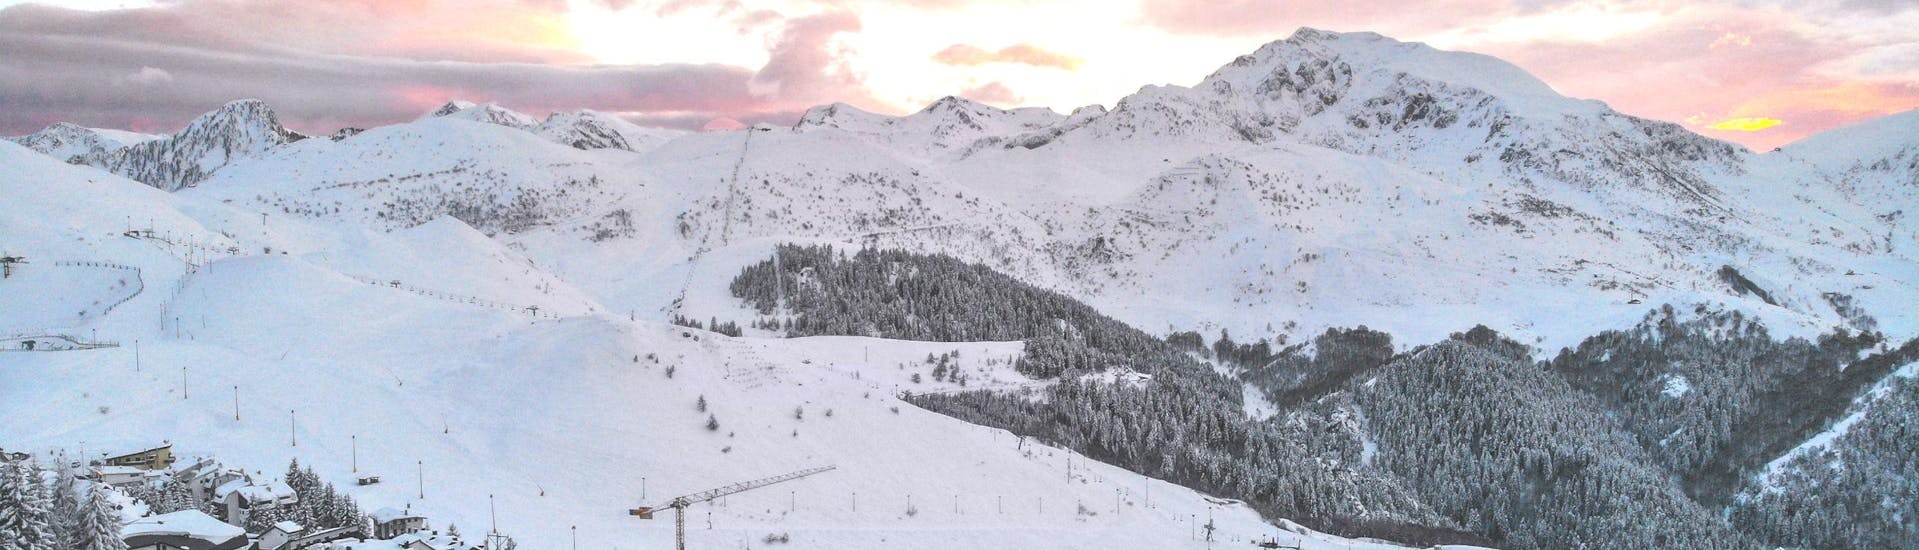 Una visuale sulle piste innevate del comprensorio sciistico di Prato Nevoso dove le scuole di sci locali svolgono le loro lezioni di sci.